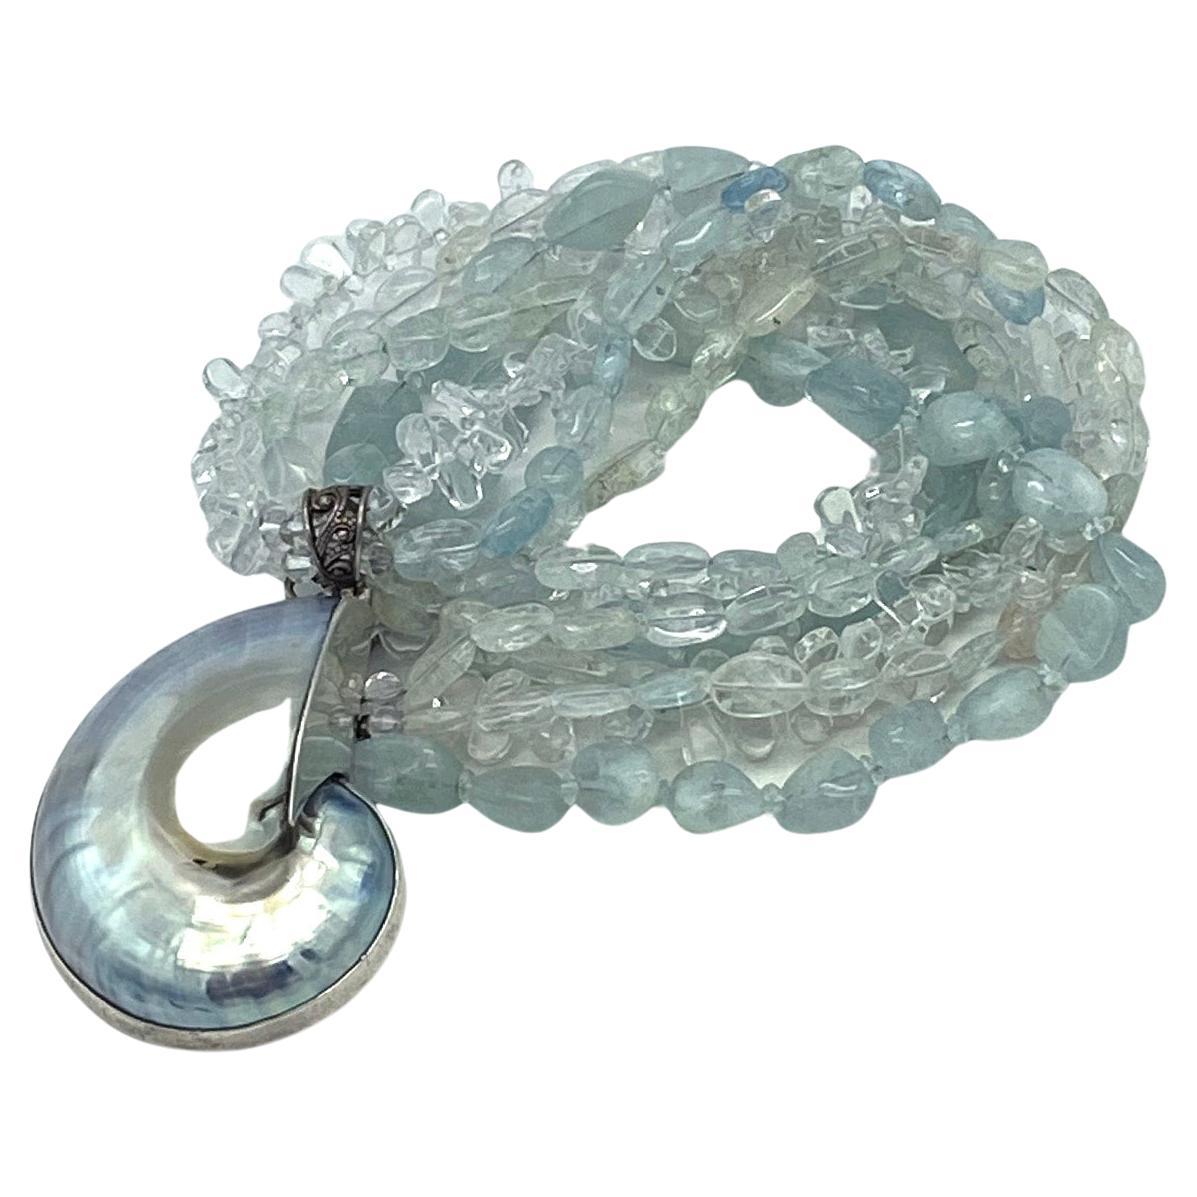 Dies ist ein Multi-Strang Aquamarin (mit einer Mischung aus transparenten bis undurchsichtigen Steinen) Halskette mit einem Ammonoidea (1,63 x 2,25 x 0,75 Zoll) Anhänger in Sterling Silber Rahmen und mit einem Knebelverschluss. 

Unsere